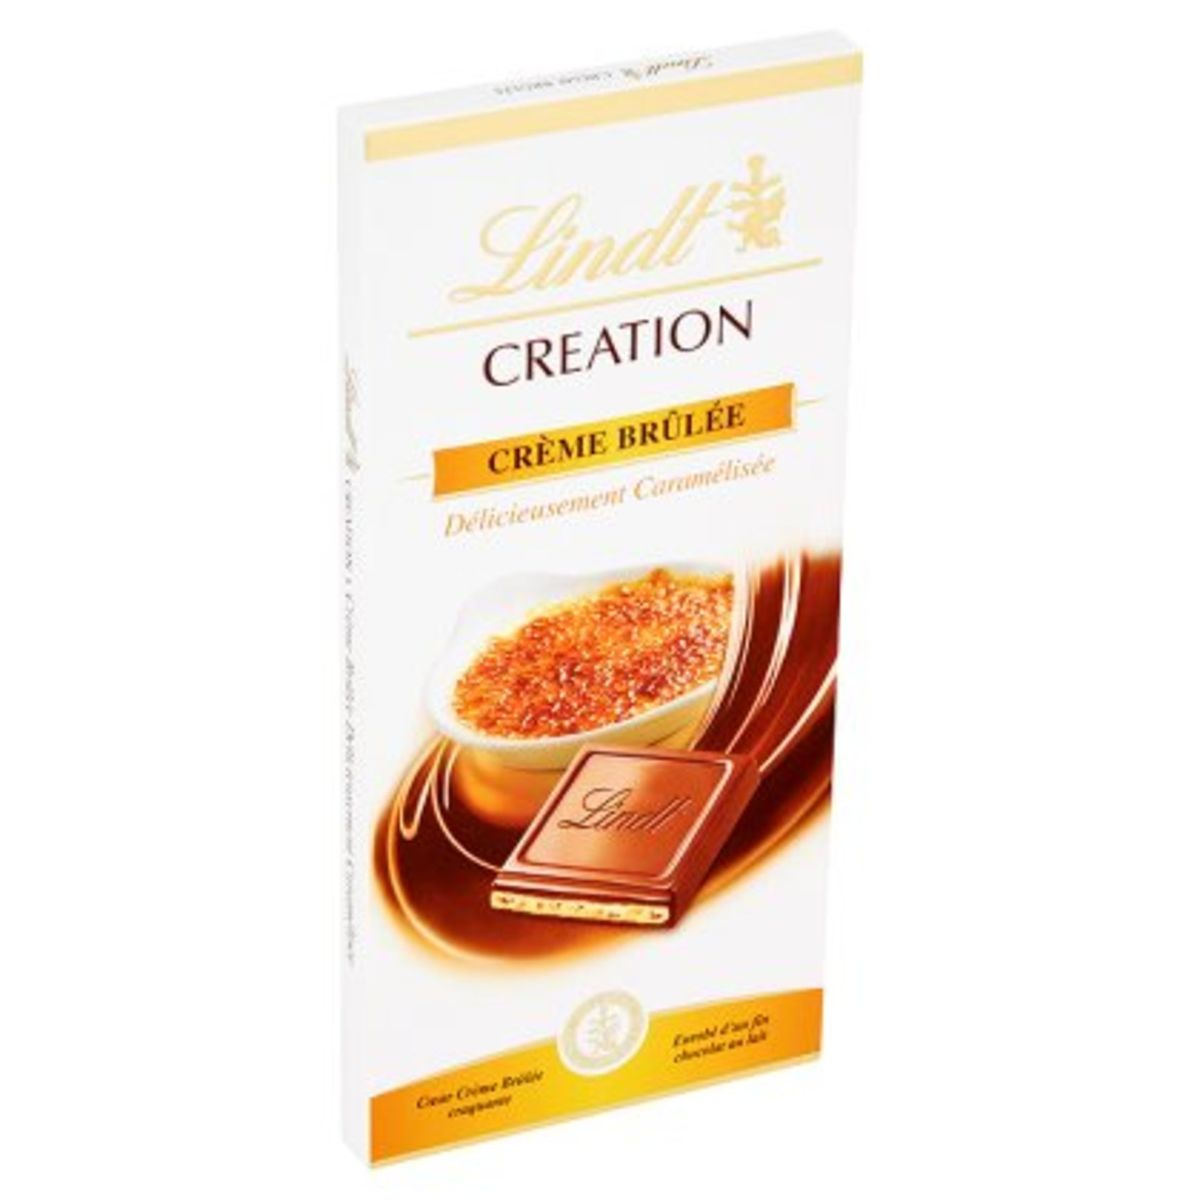 Lindt Creation Crème Brûlée Délicieusement Caramélisée 150 g